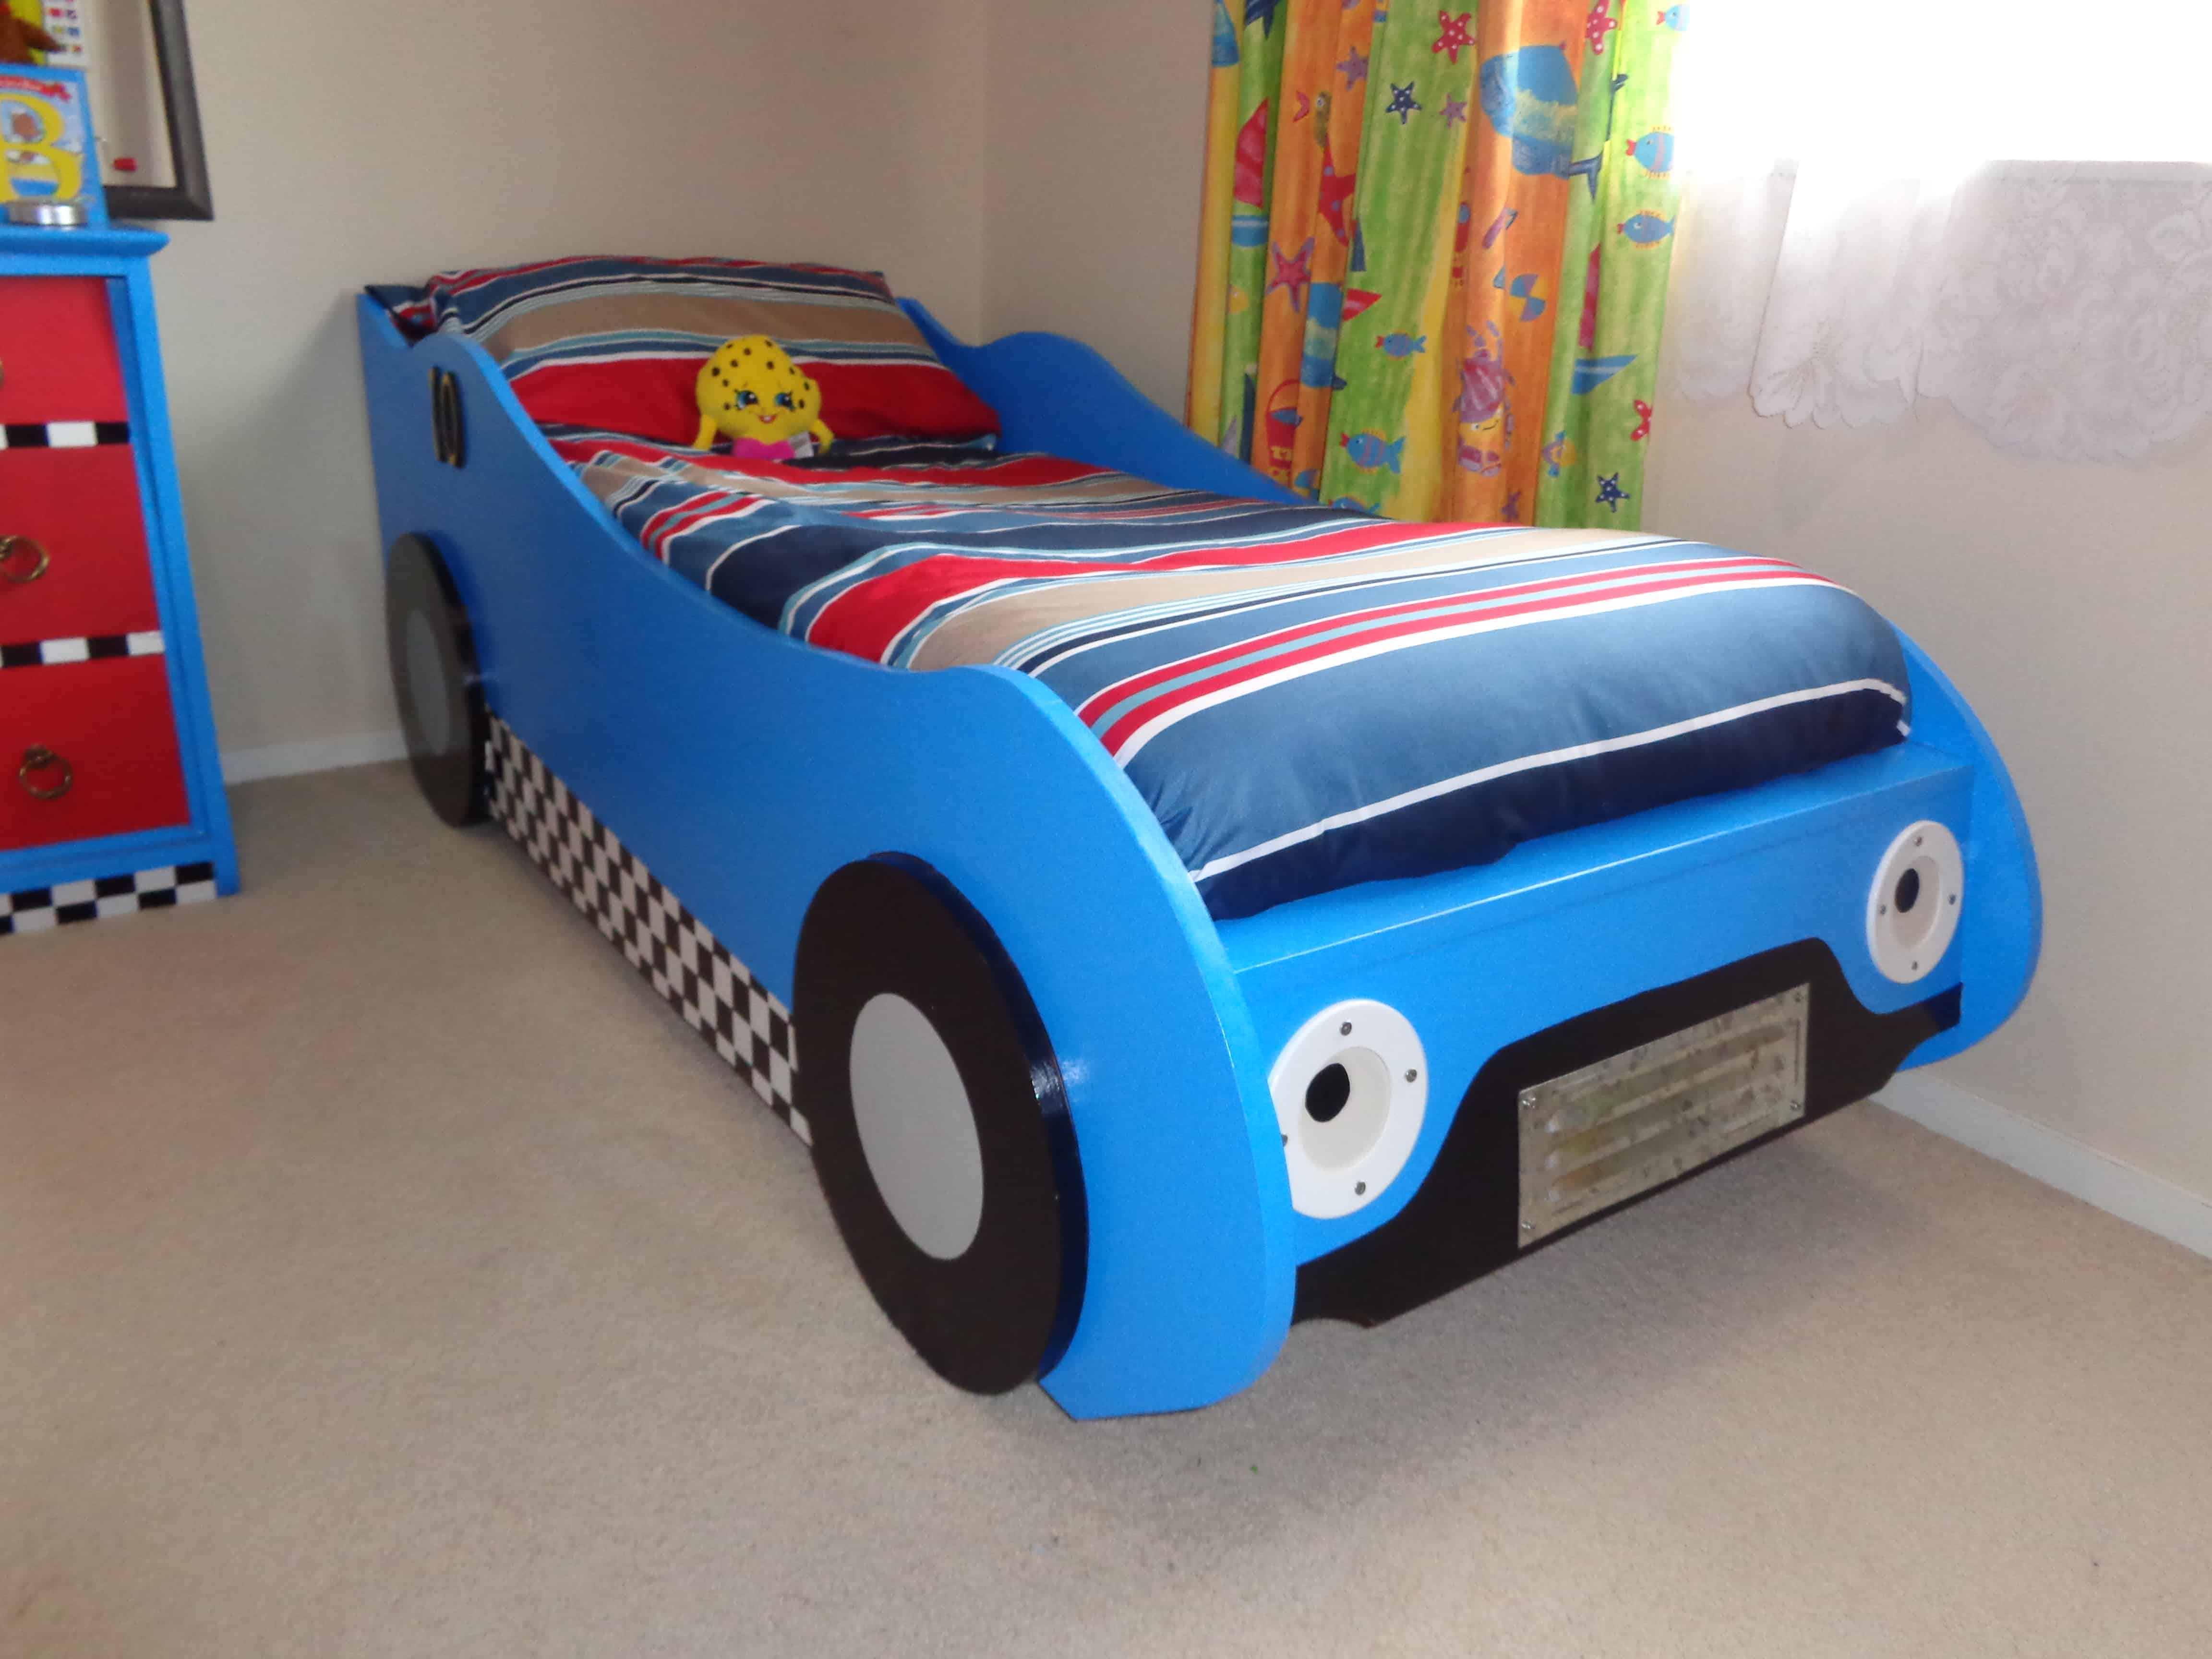 race car beds for boys